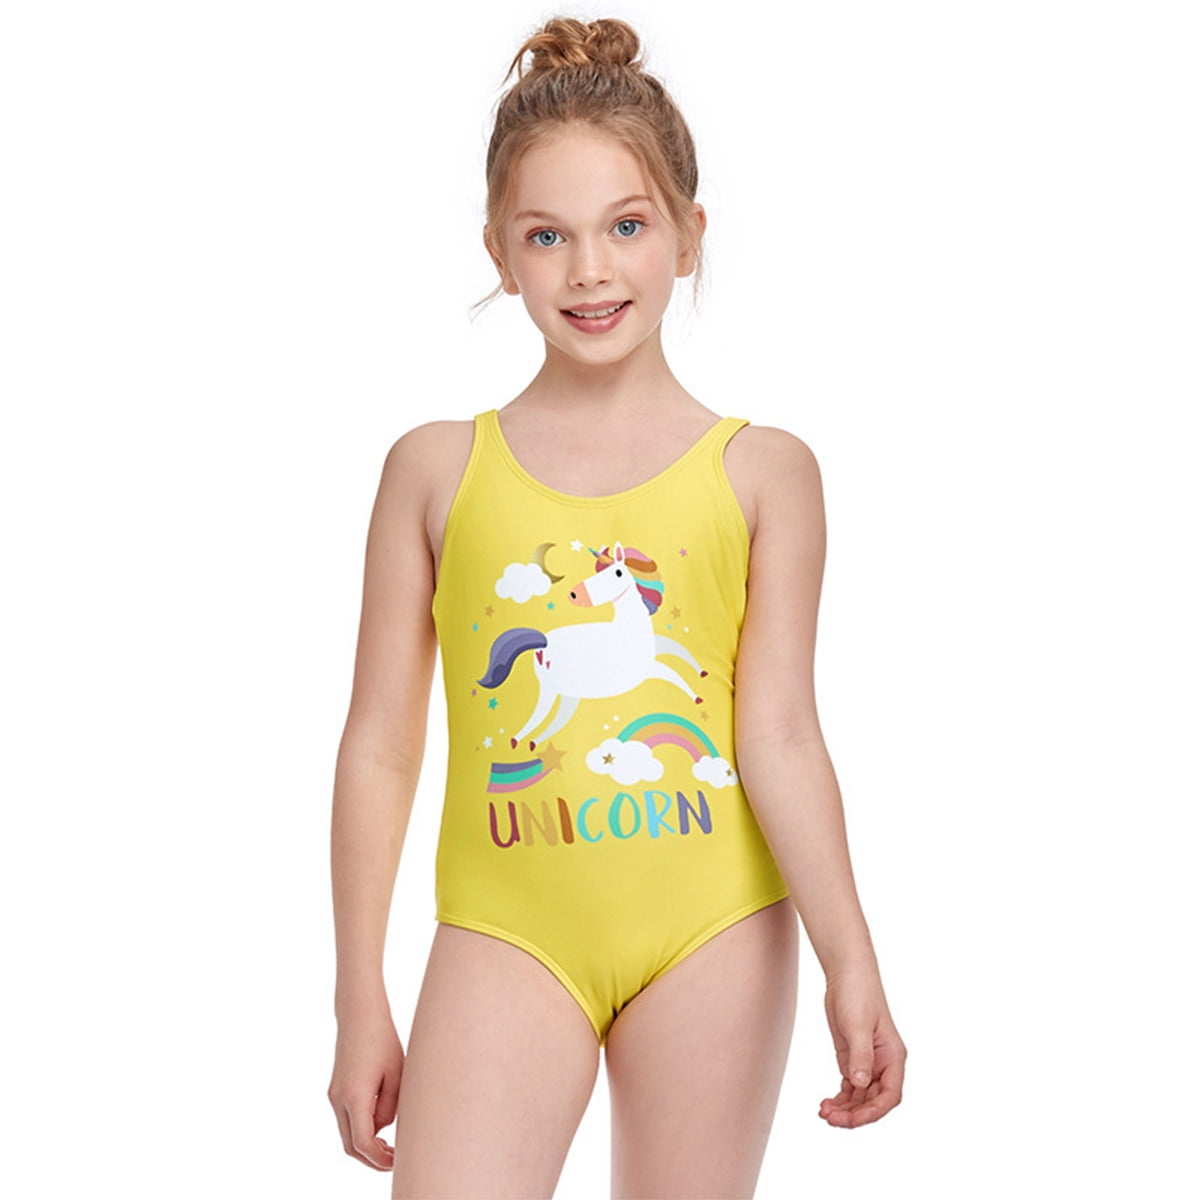 Toddler Baby Girls Swimsuit Ruffle Bottom Halter Back Strap Cross Swimwear Beach Summer Bathing Suit 